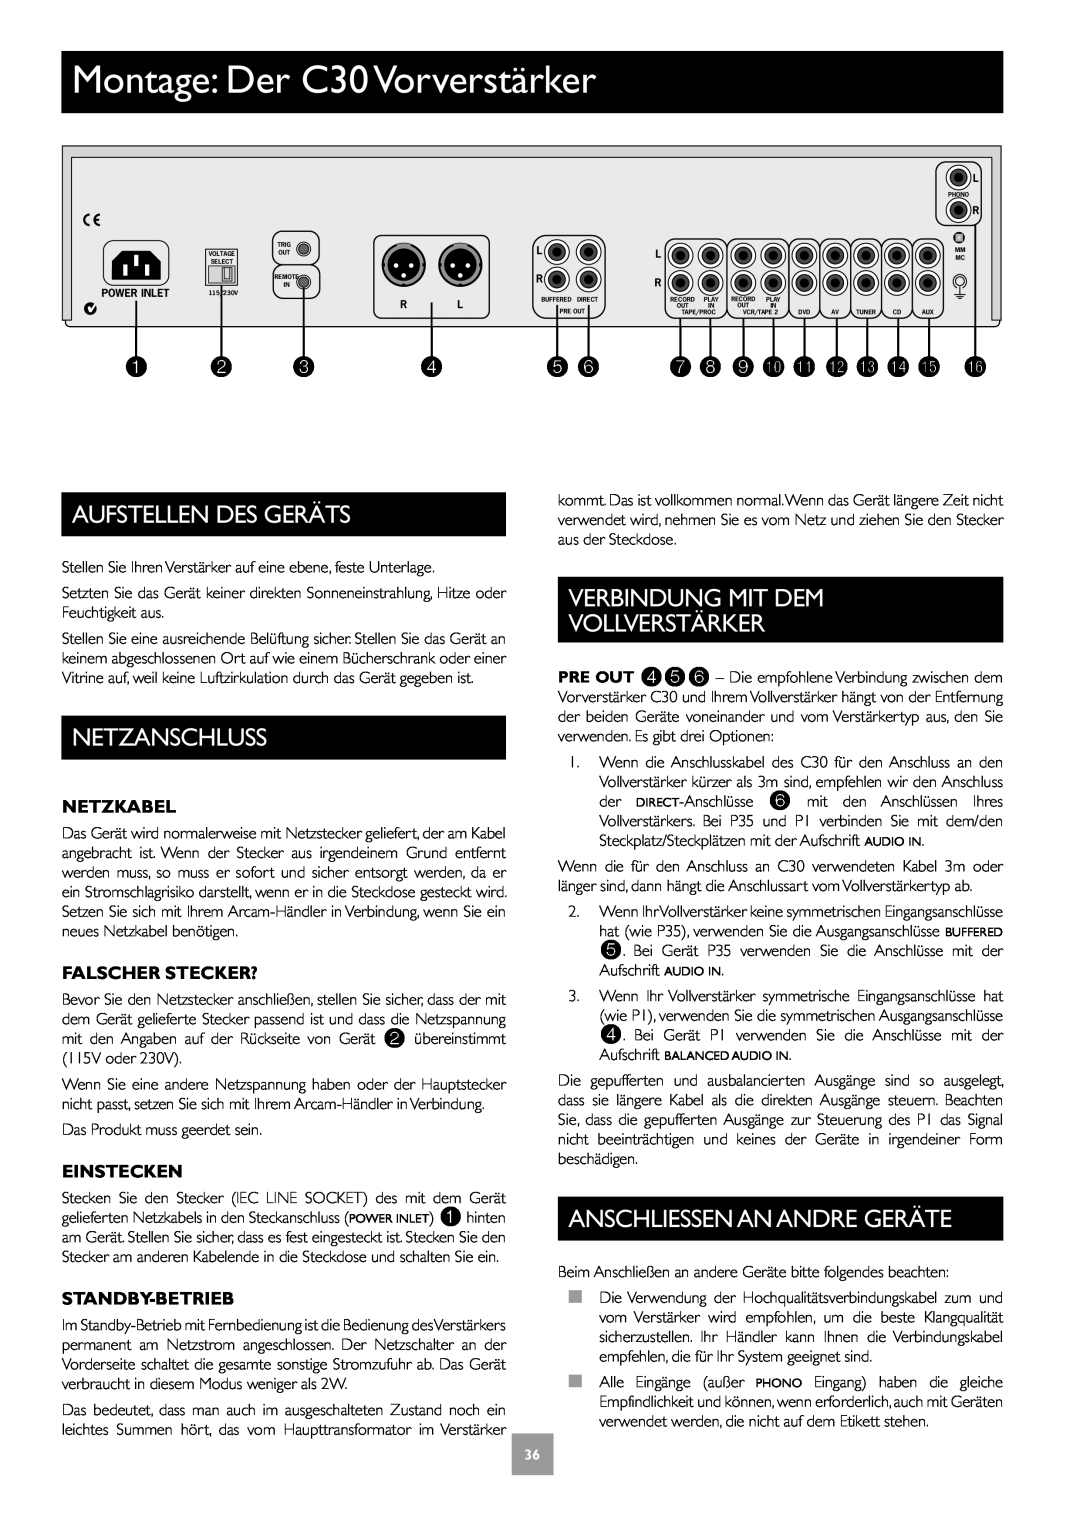 Arcam P35, P1 manual Montage Der C30 Vorverstärker, Aufstellen Des Geräts, Netzanschluss, Verbindung Mit Dem Vollverstärker 